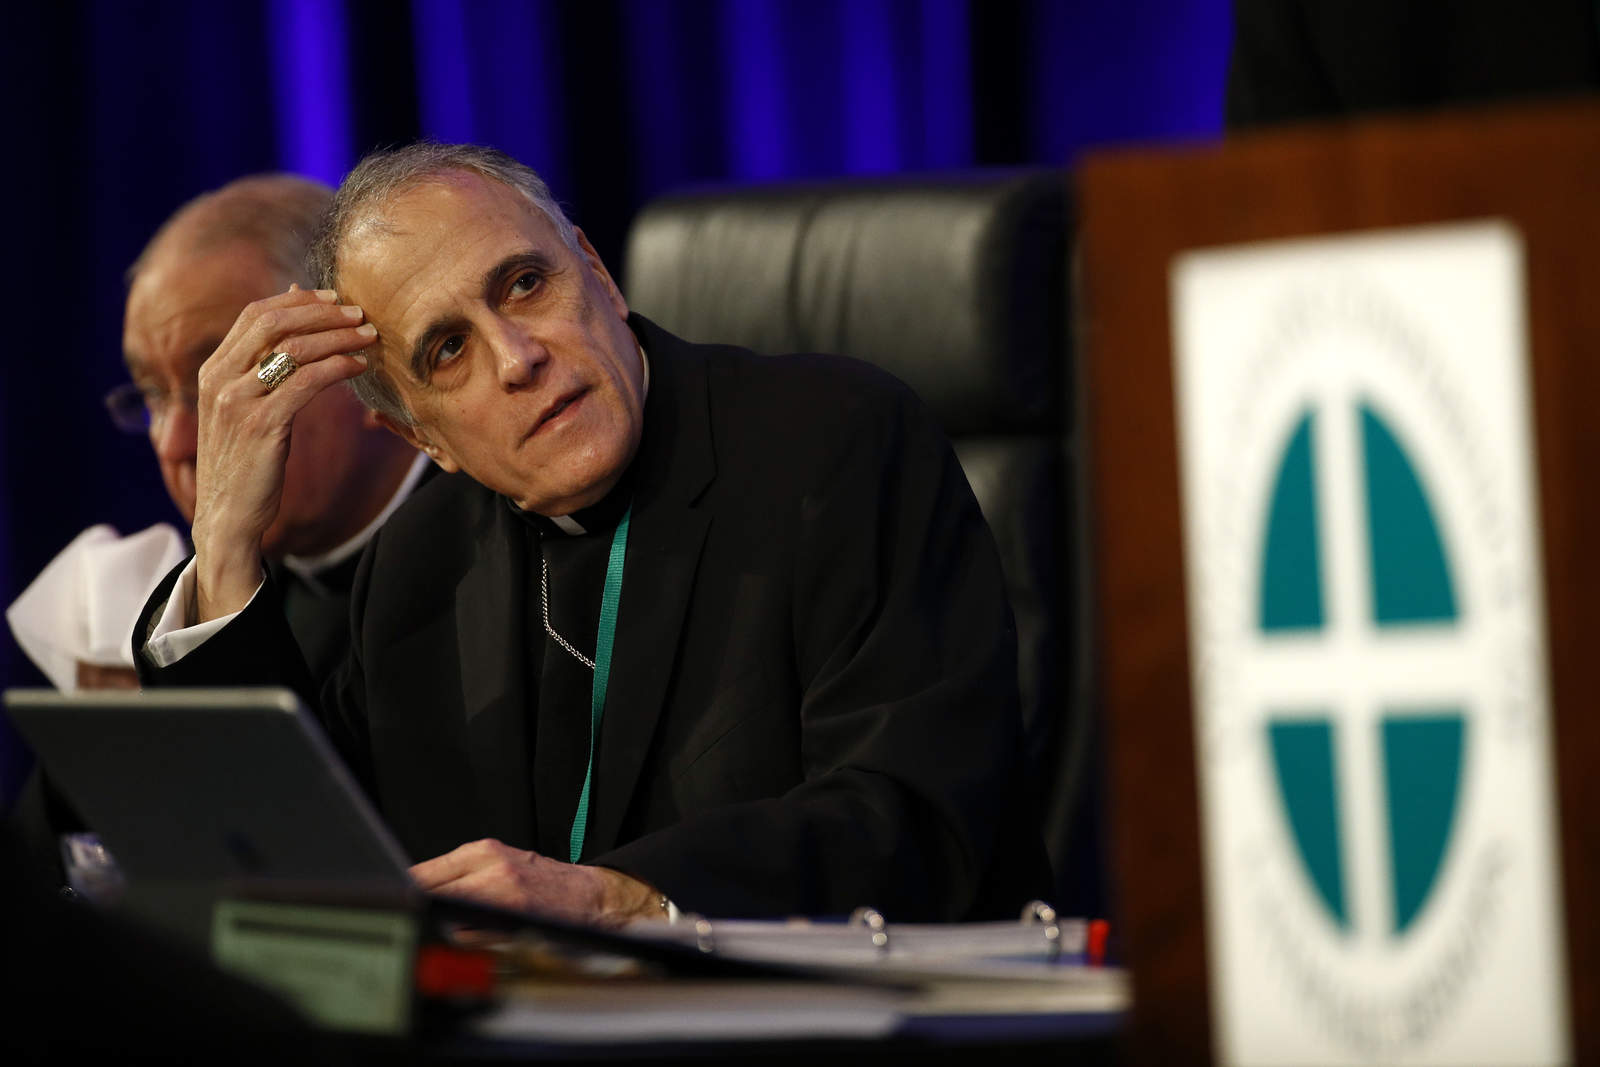 Obispos católicos aplazan voto sobre abusos sexuales. Noticias en tiempo real